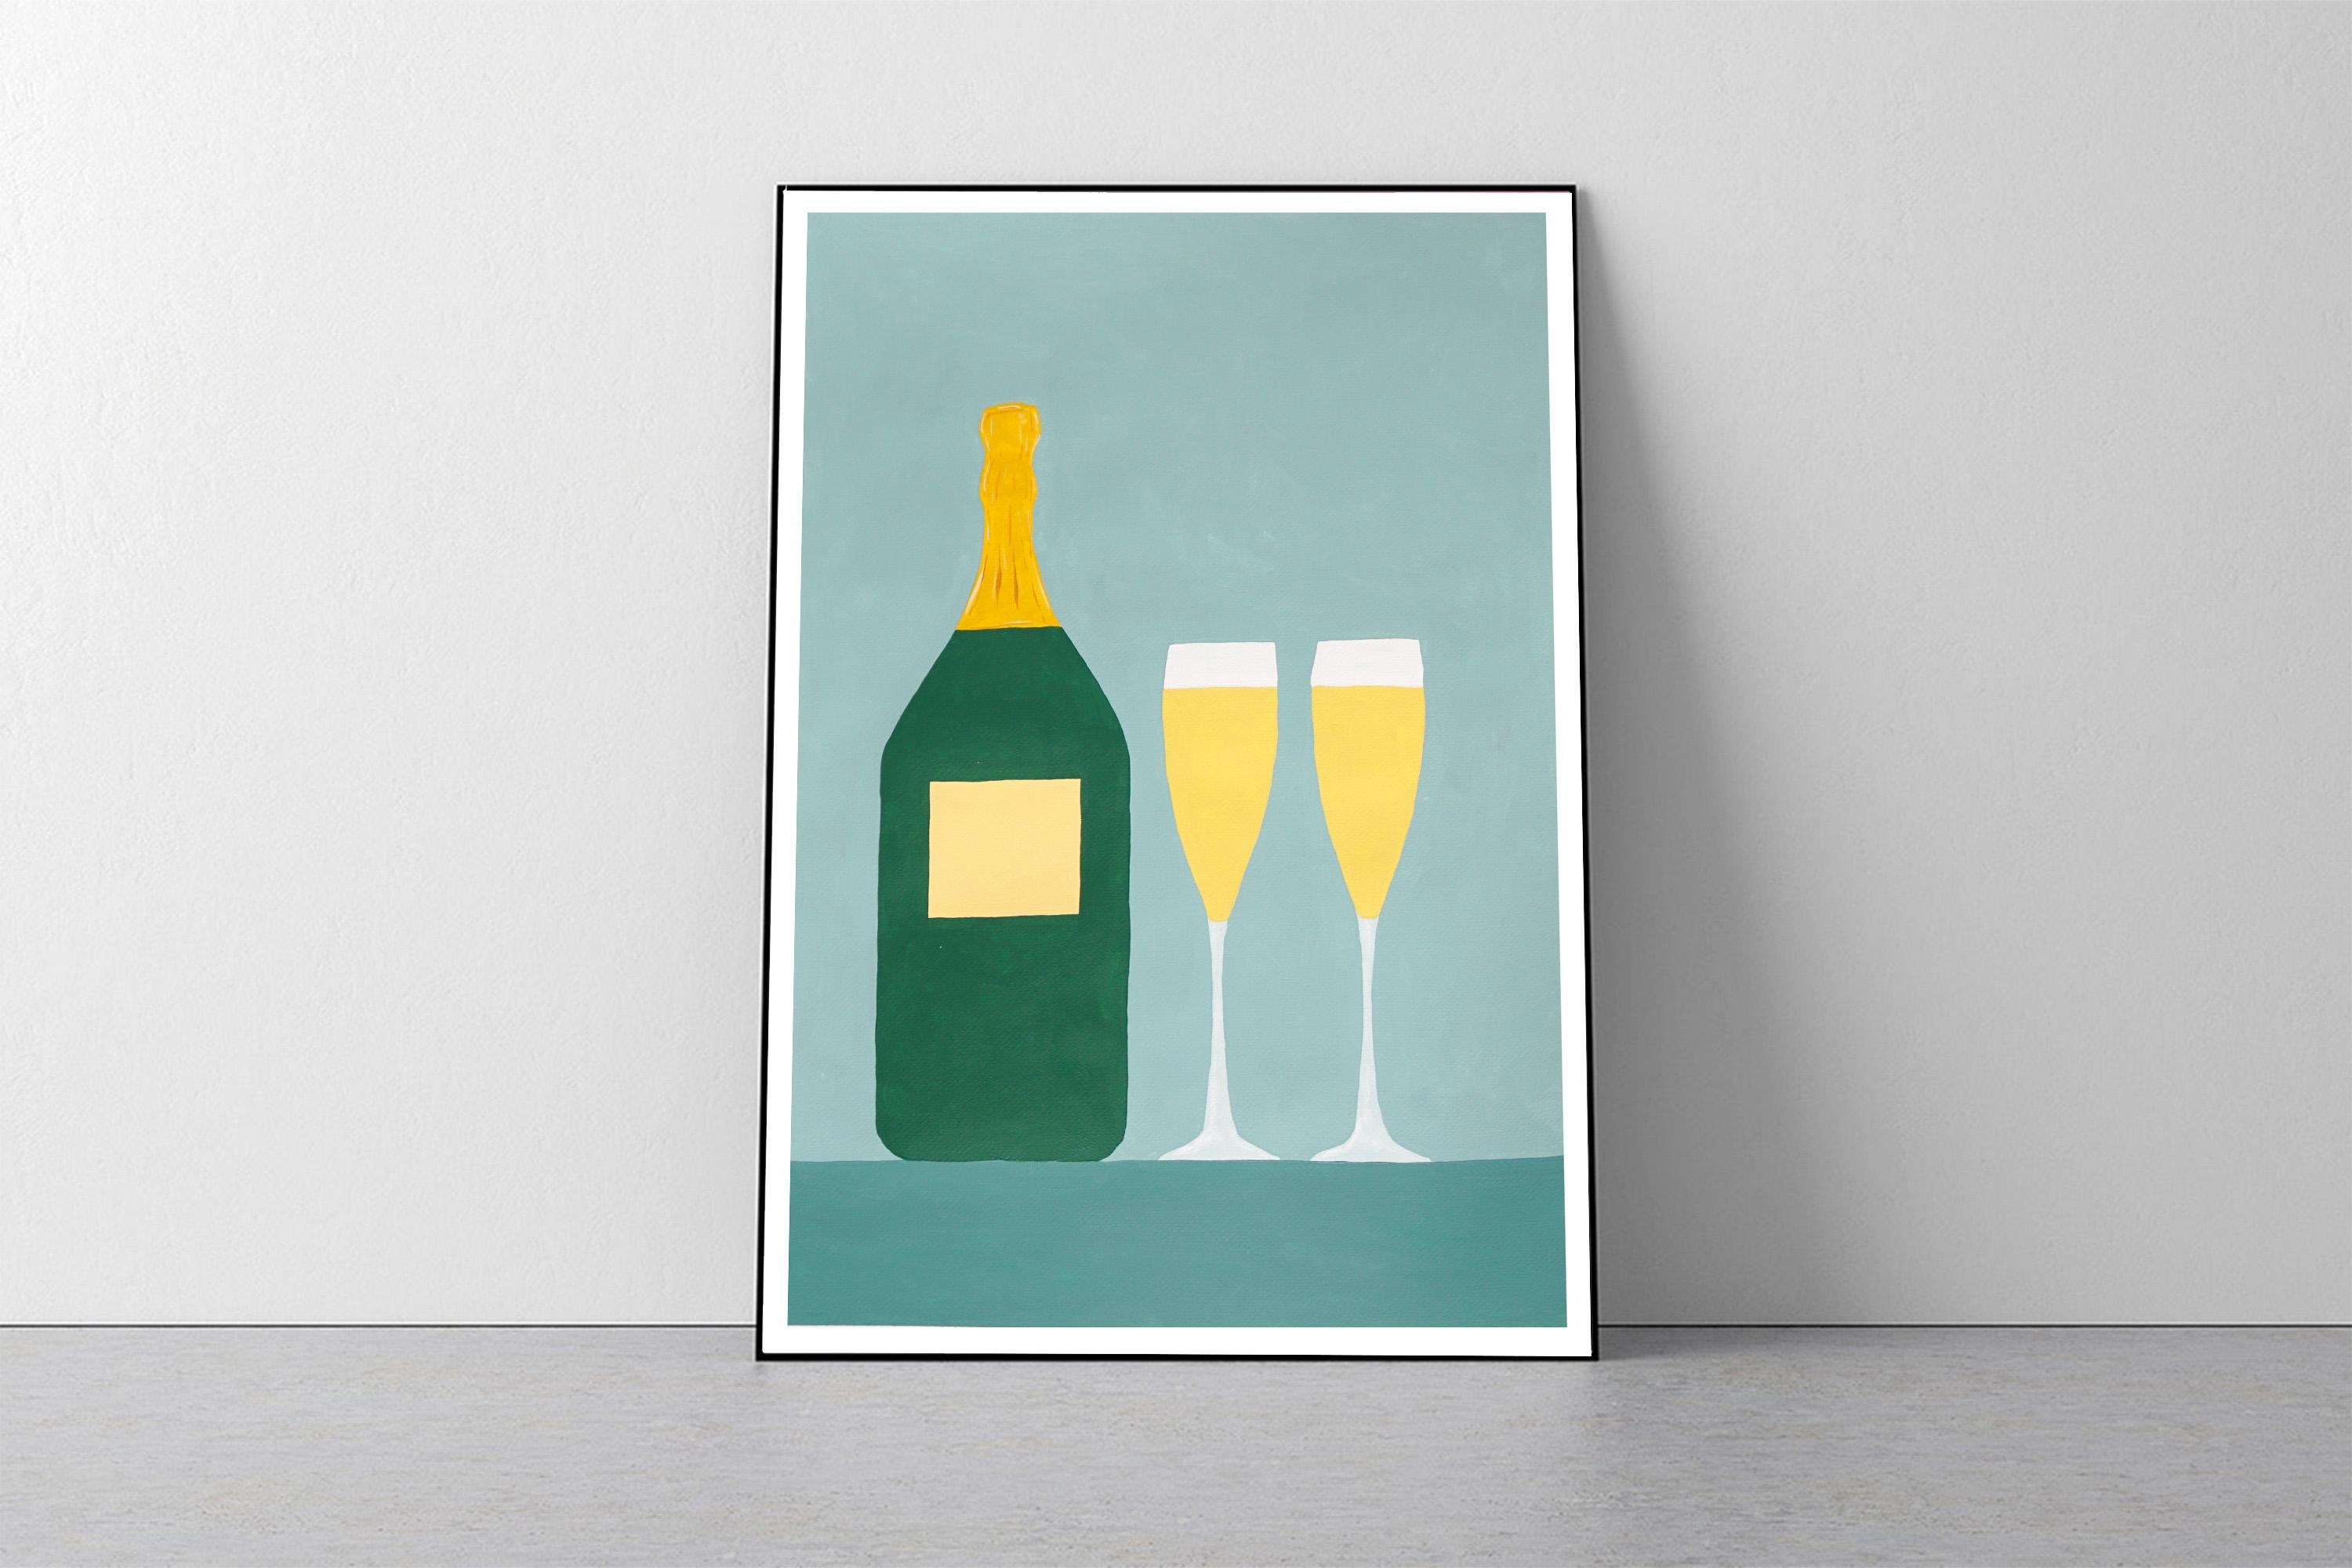 Champagne for Two, nature morte moderne dans des tons dorés, vert pâle réaliste naïf   - Painting de Gio Bellagio